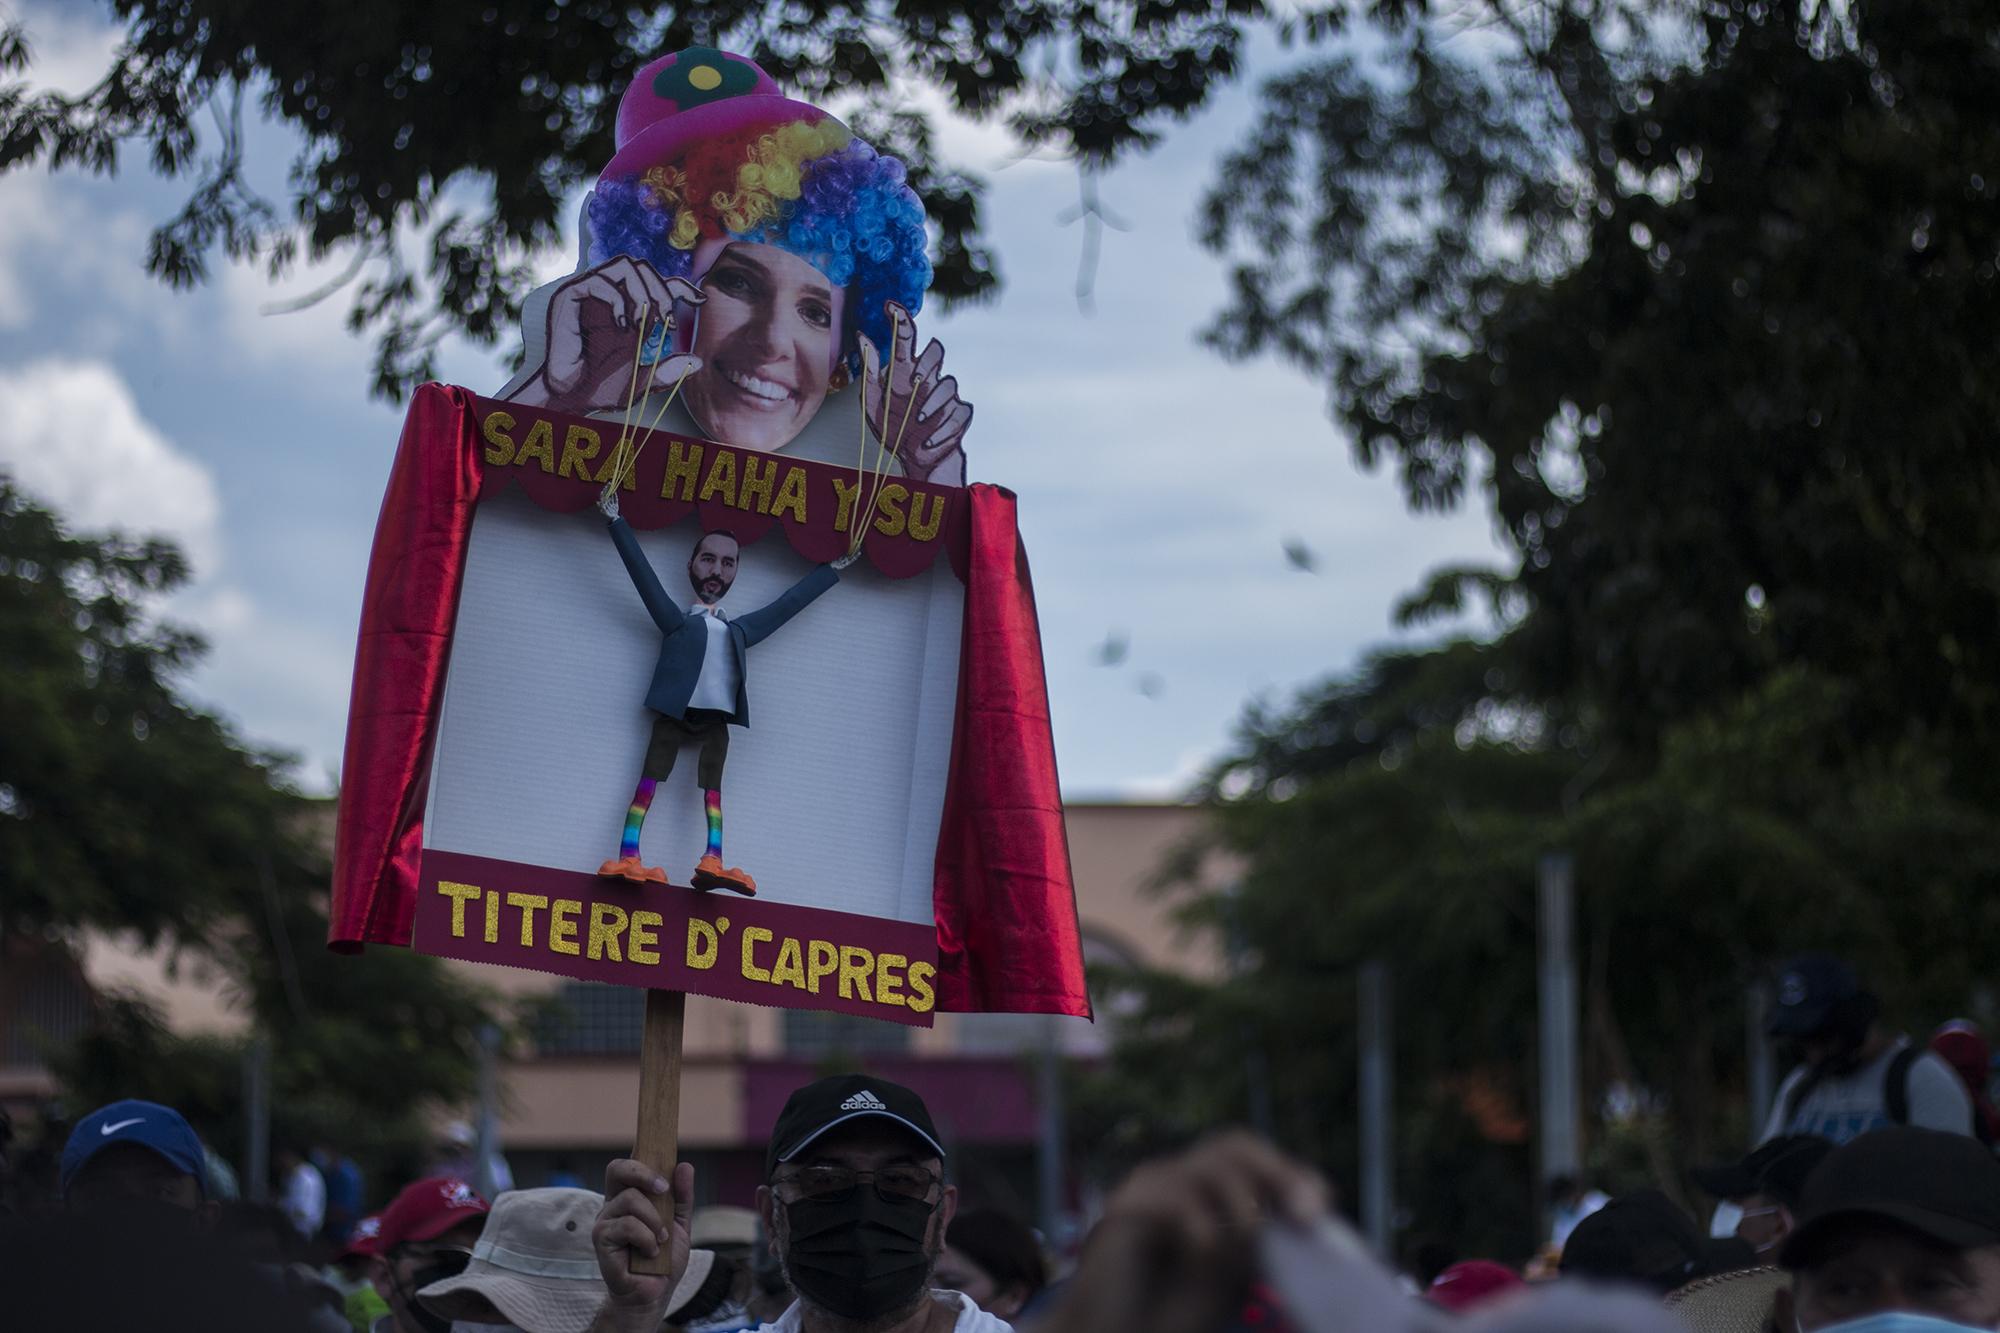 Sara Hanna, la asesora venezolana del presidente Nayib Bukele, fue también centro de críticas durante la manifestación. Un cartel hacía parodia sobre sus funciones en el Gobierno de El Salvador. 